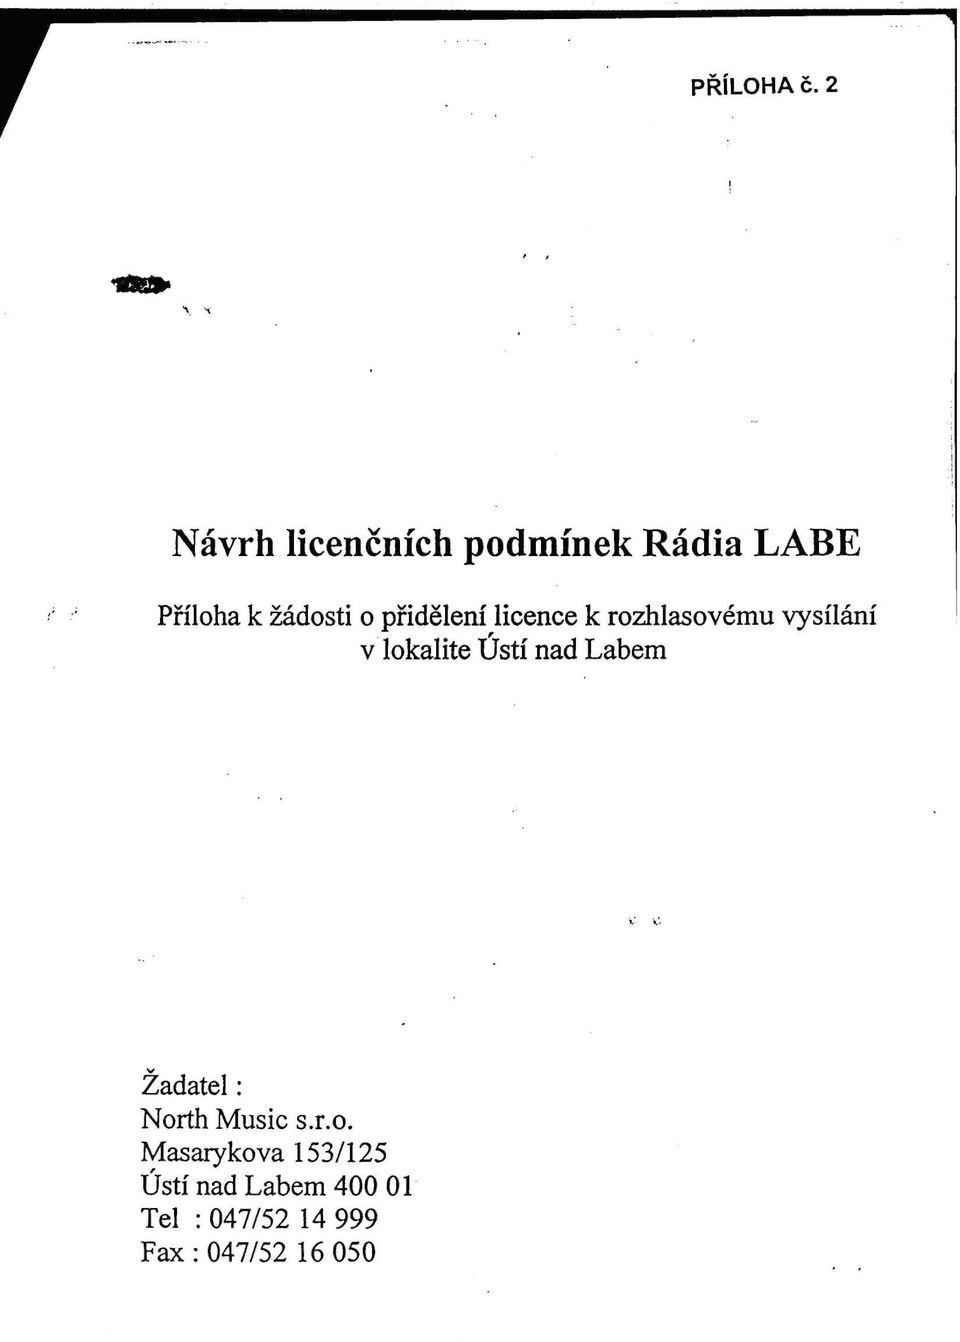 přidělení licence k rozhlasovému vysílání v lokalitě Ústí nad